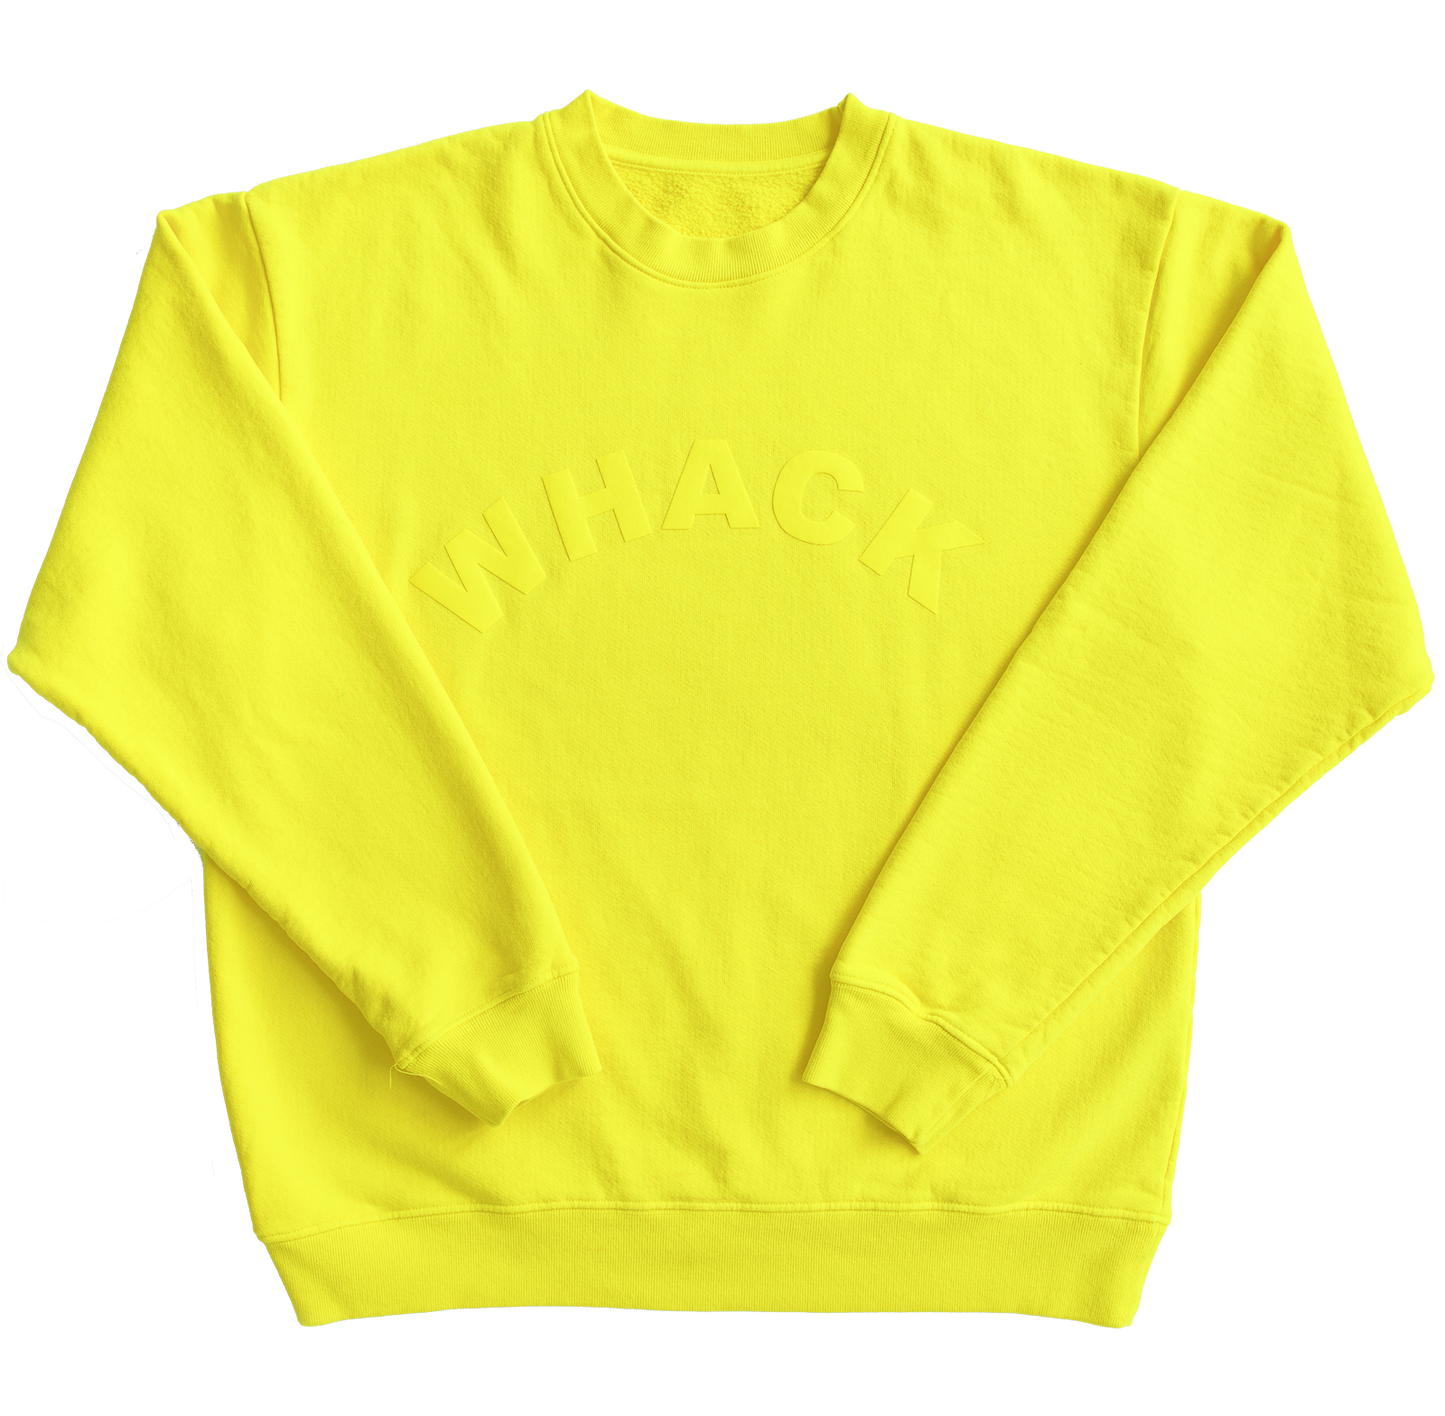 WHACK Crewneck - Yellow